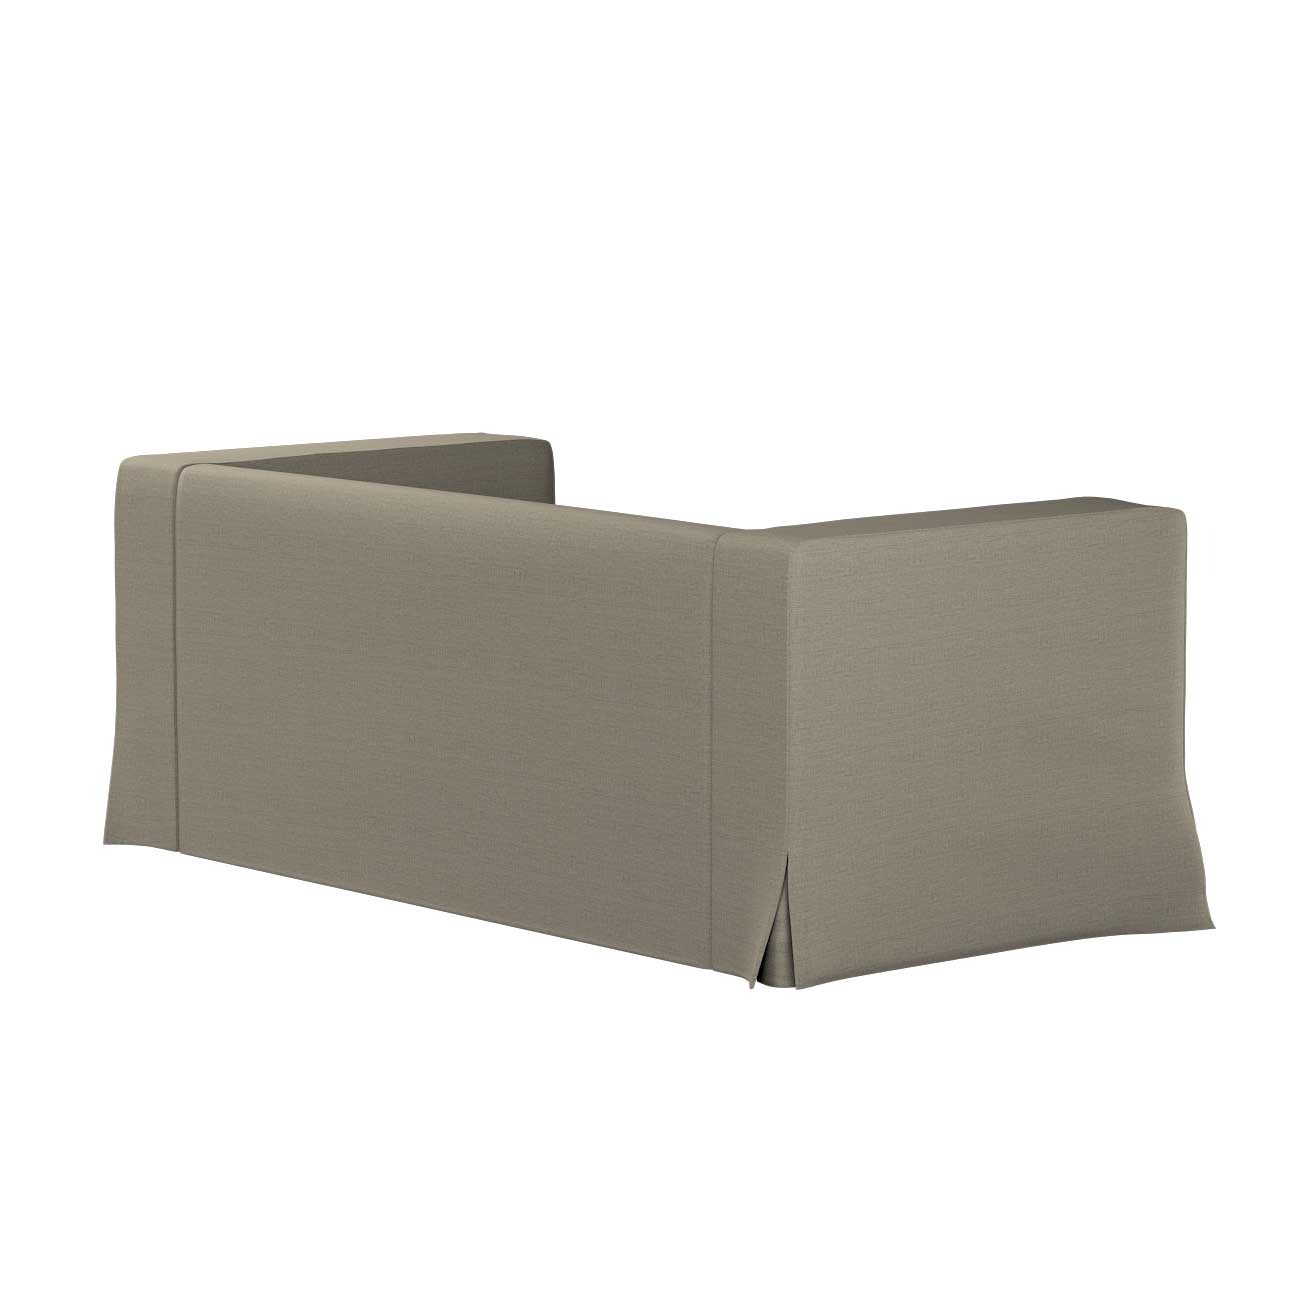 Bezug für Klippan 2-Sitzer Sofa, lang mit Kellerfalte, beige-grau, Klippan günstig online kaufen